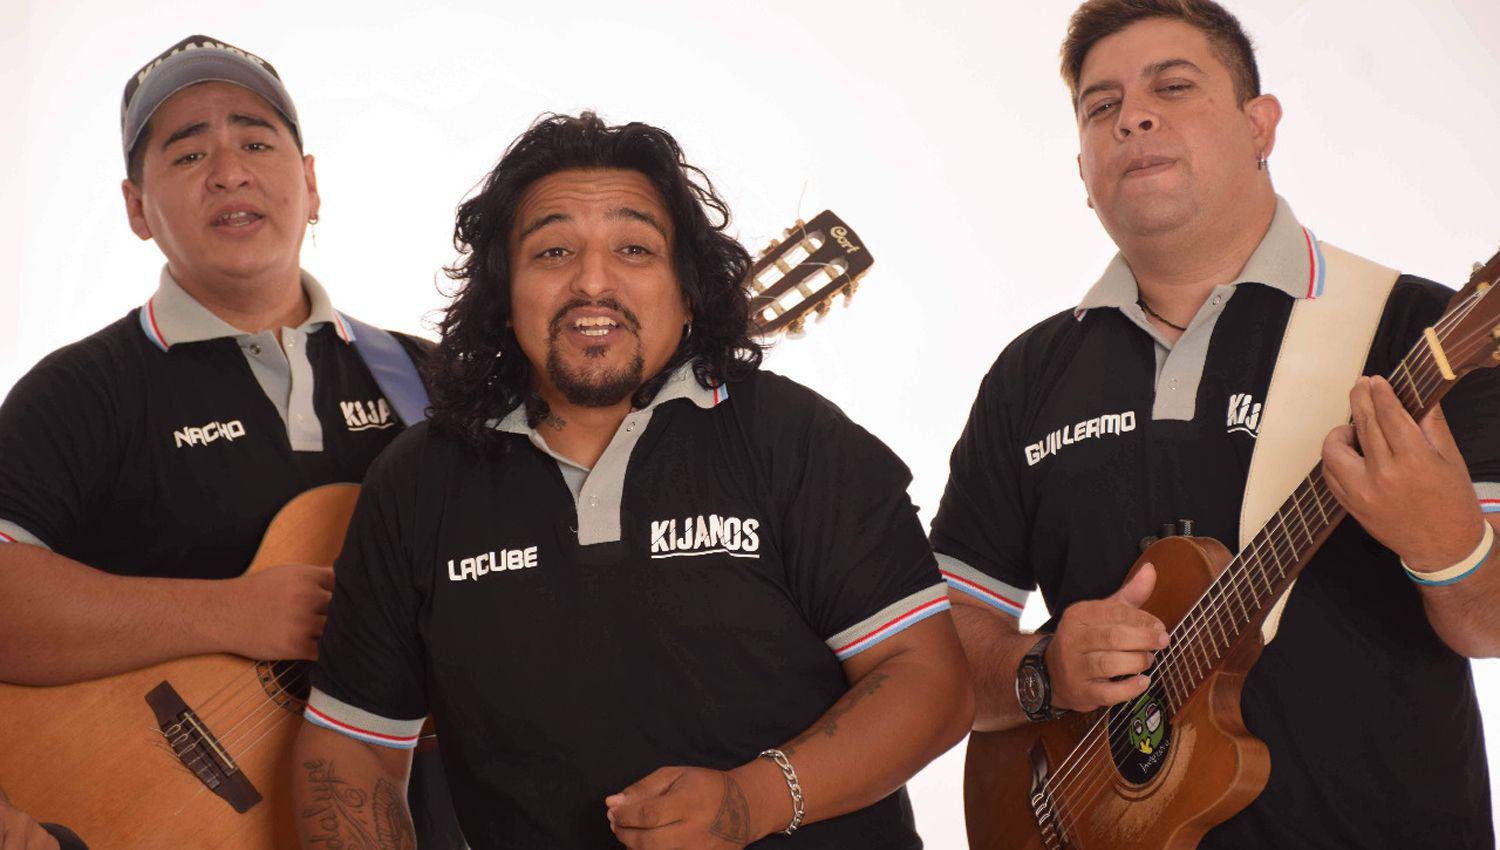 El conjunto santiaguentildeo Los Kijanos debuta el 26 en el streaming